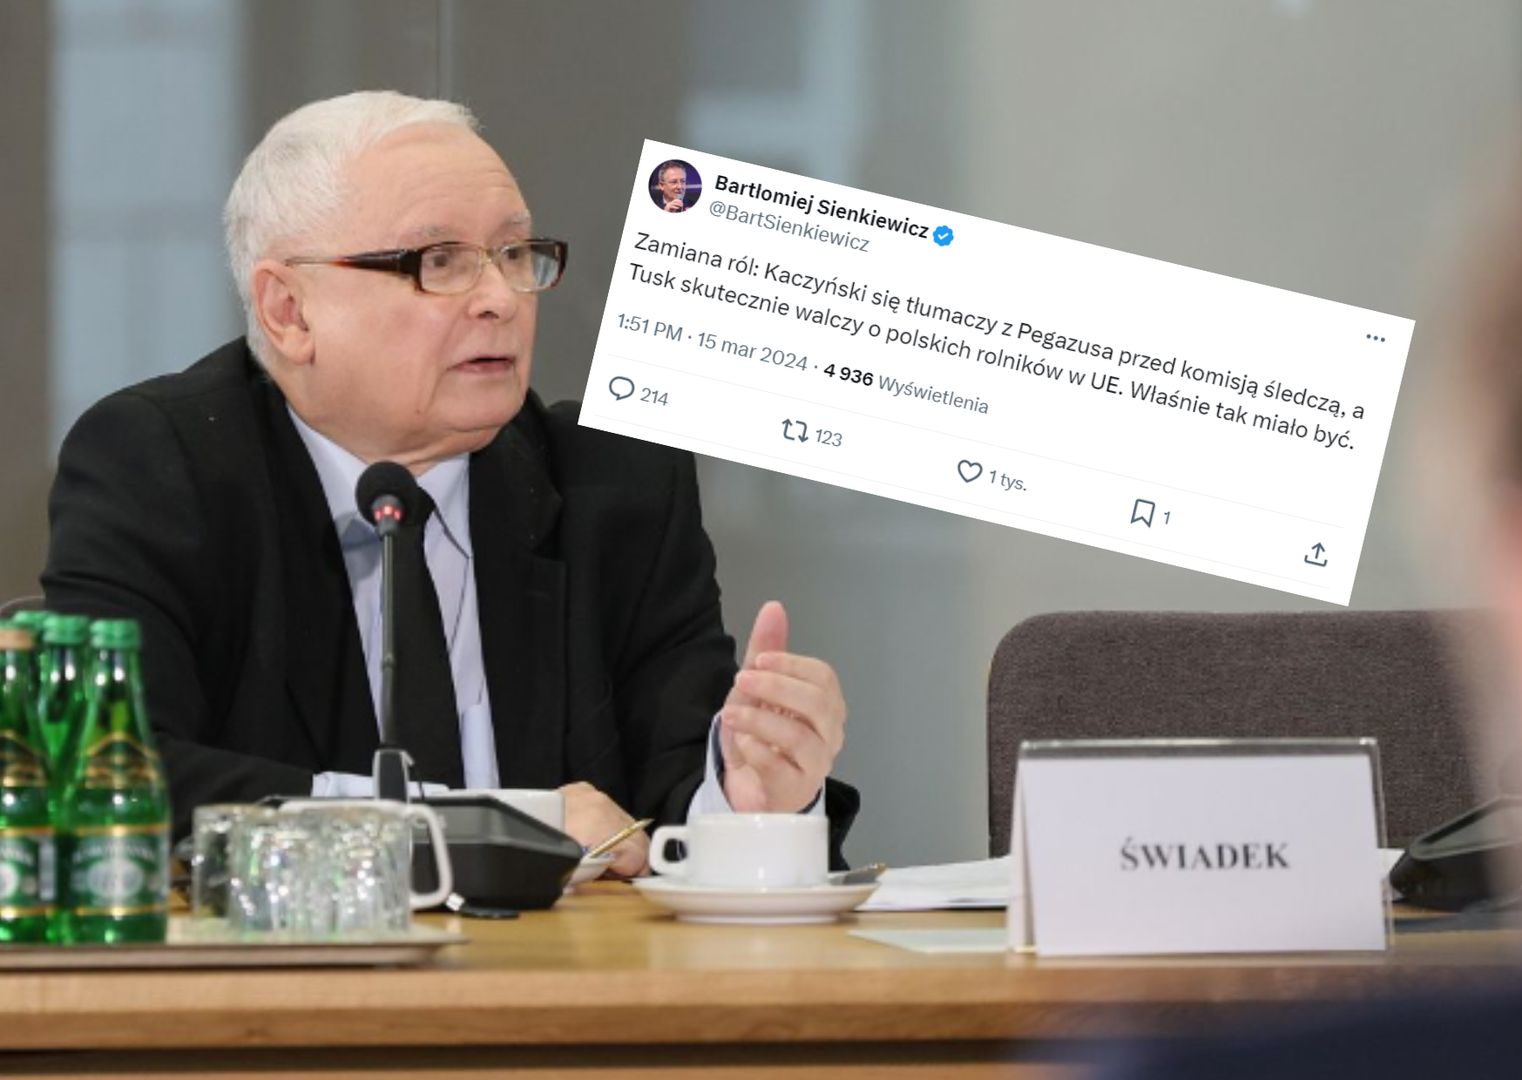 Burza wokół zeznań Kaczyńskiego. Sienkiewicz mówi o "zamianie ról"